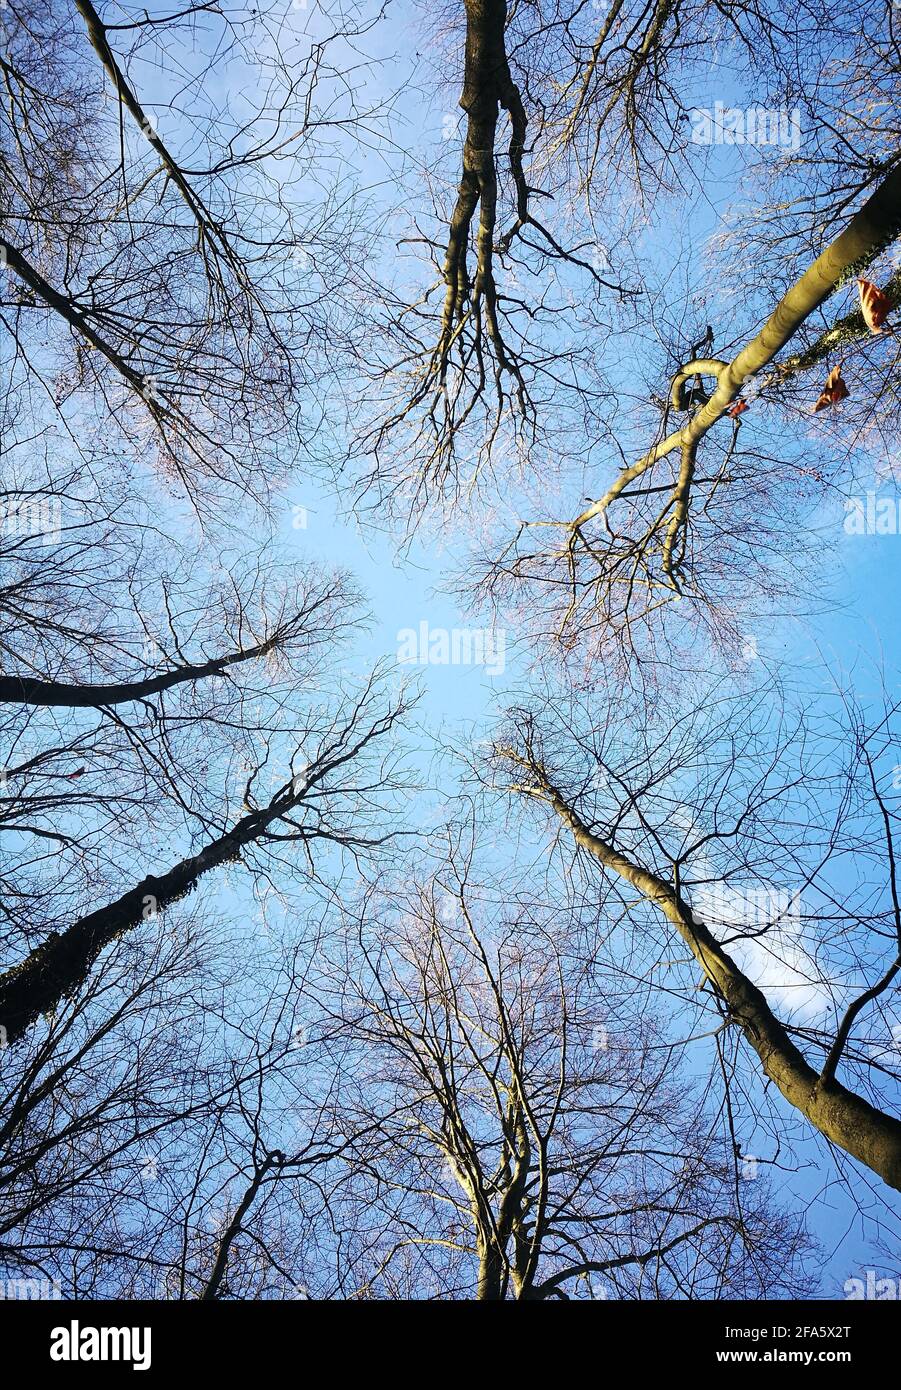 Alberi senza foglie con cielo limpido e parzialmente nuvoloso presi dal basso, durante il mio viaggio al Goettinger-Stadtwald, nella città di Goettingen, Germania. Foto Stock